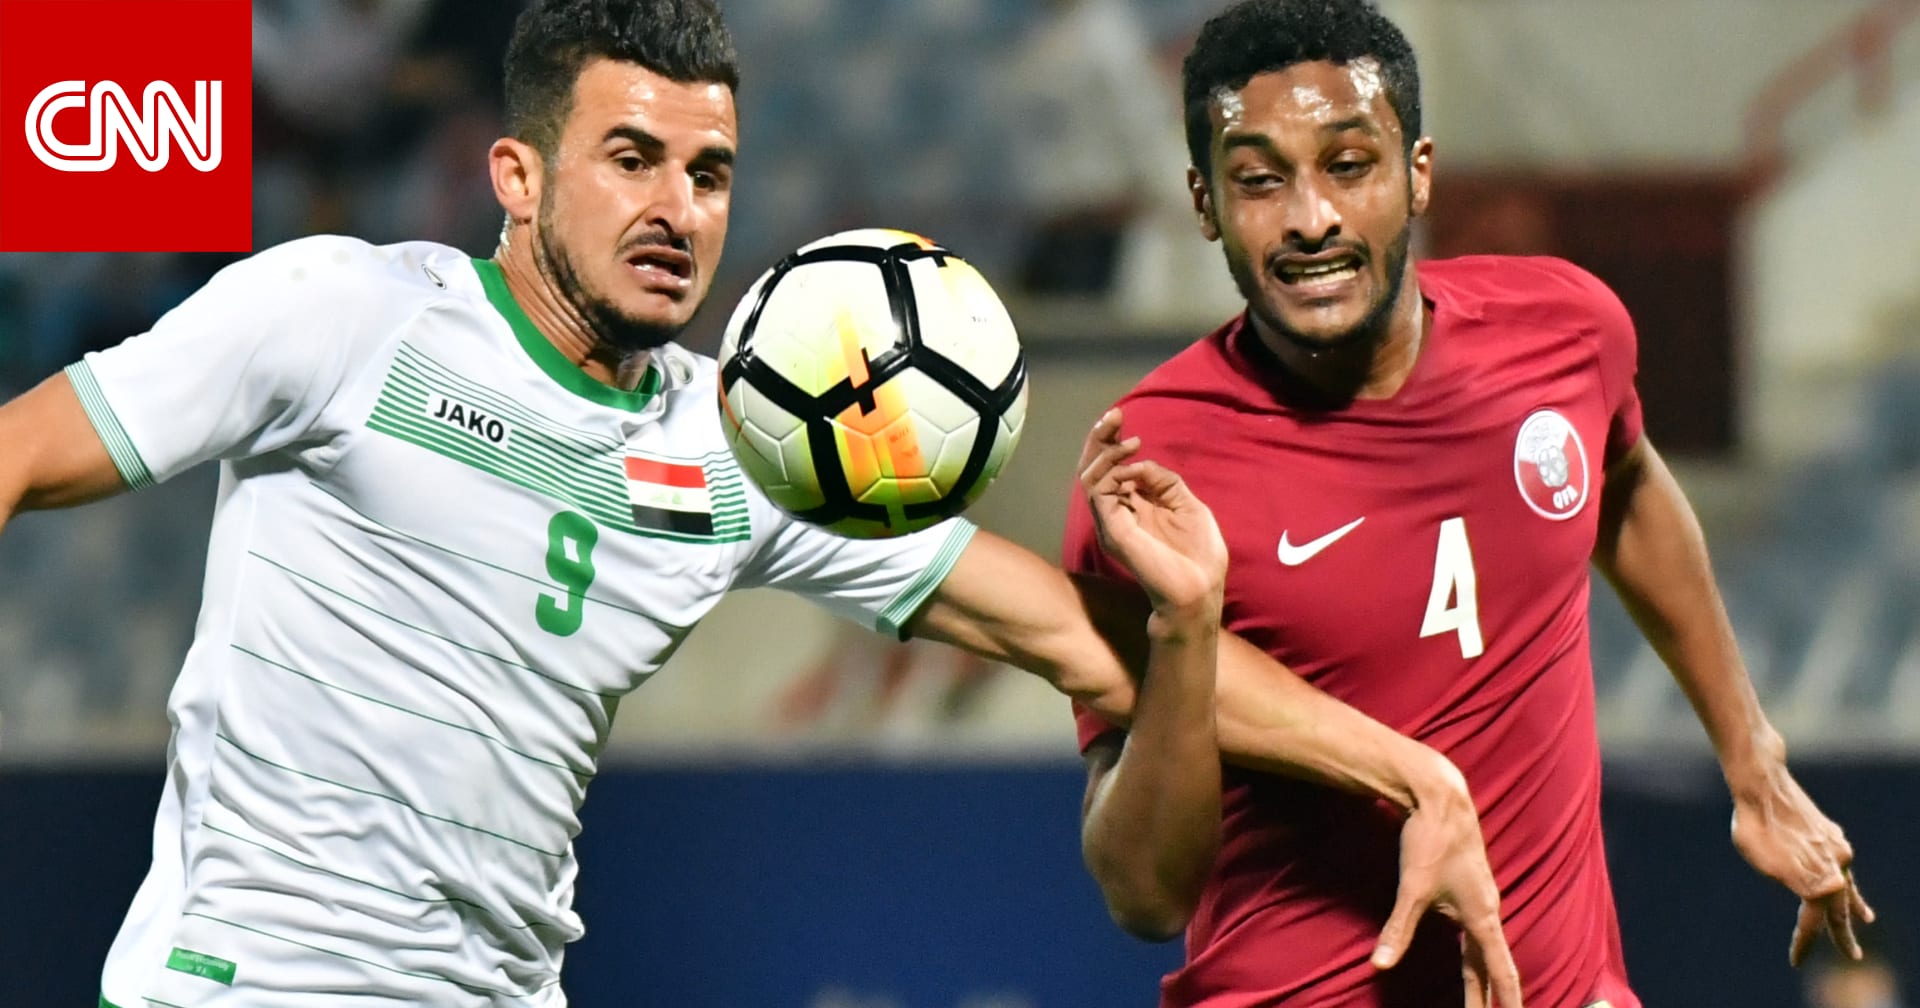 العقدة تستمر.. قطر لم تفز على العراق في كأس الخليج منذ 33 عاما CNN Arabic